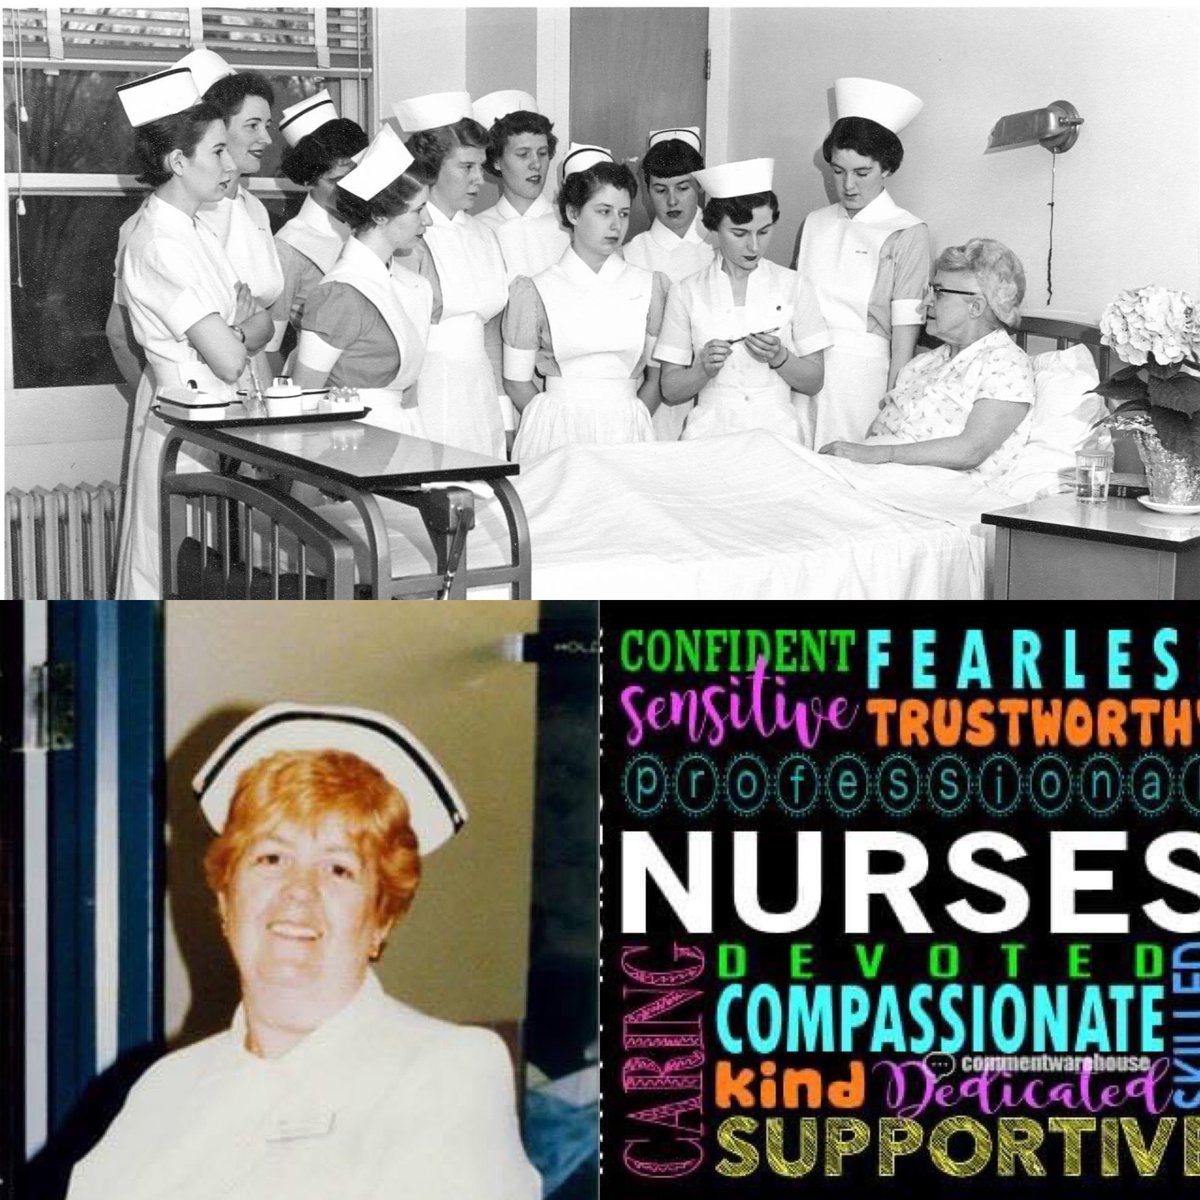 Happy Nurses Week! Celebrating all nurses past and present. #OurNursesOurFuture #IKnowANurse